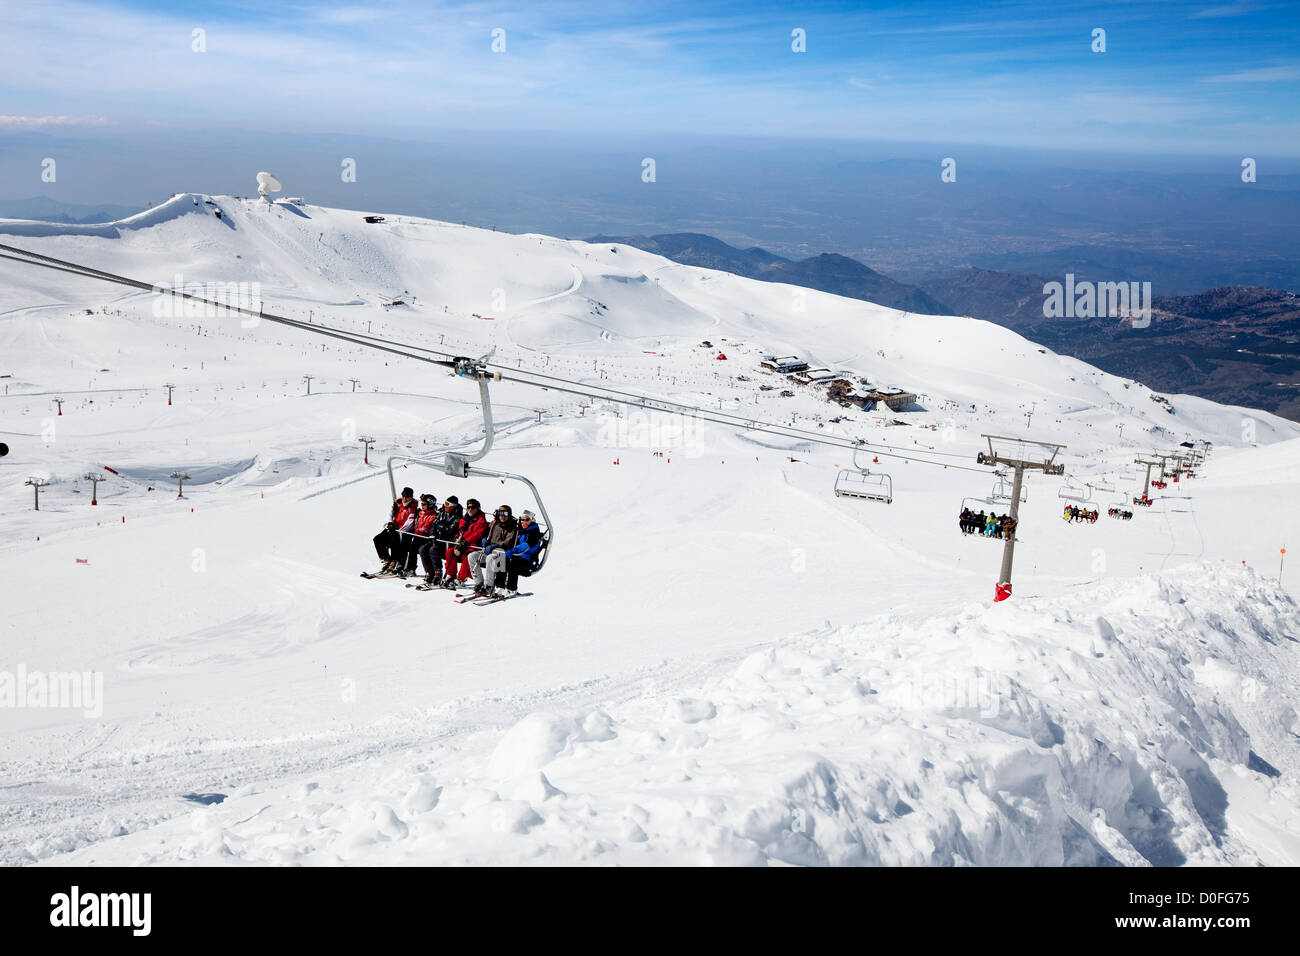 La station de ski Sierra Nevada Grenade Andalousie Espagne Estacion de esqui Sierra Nevada Granada, Andalousie Espagne Banque D'Images